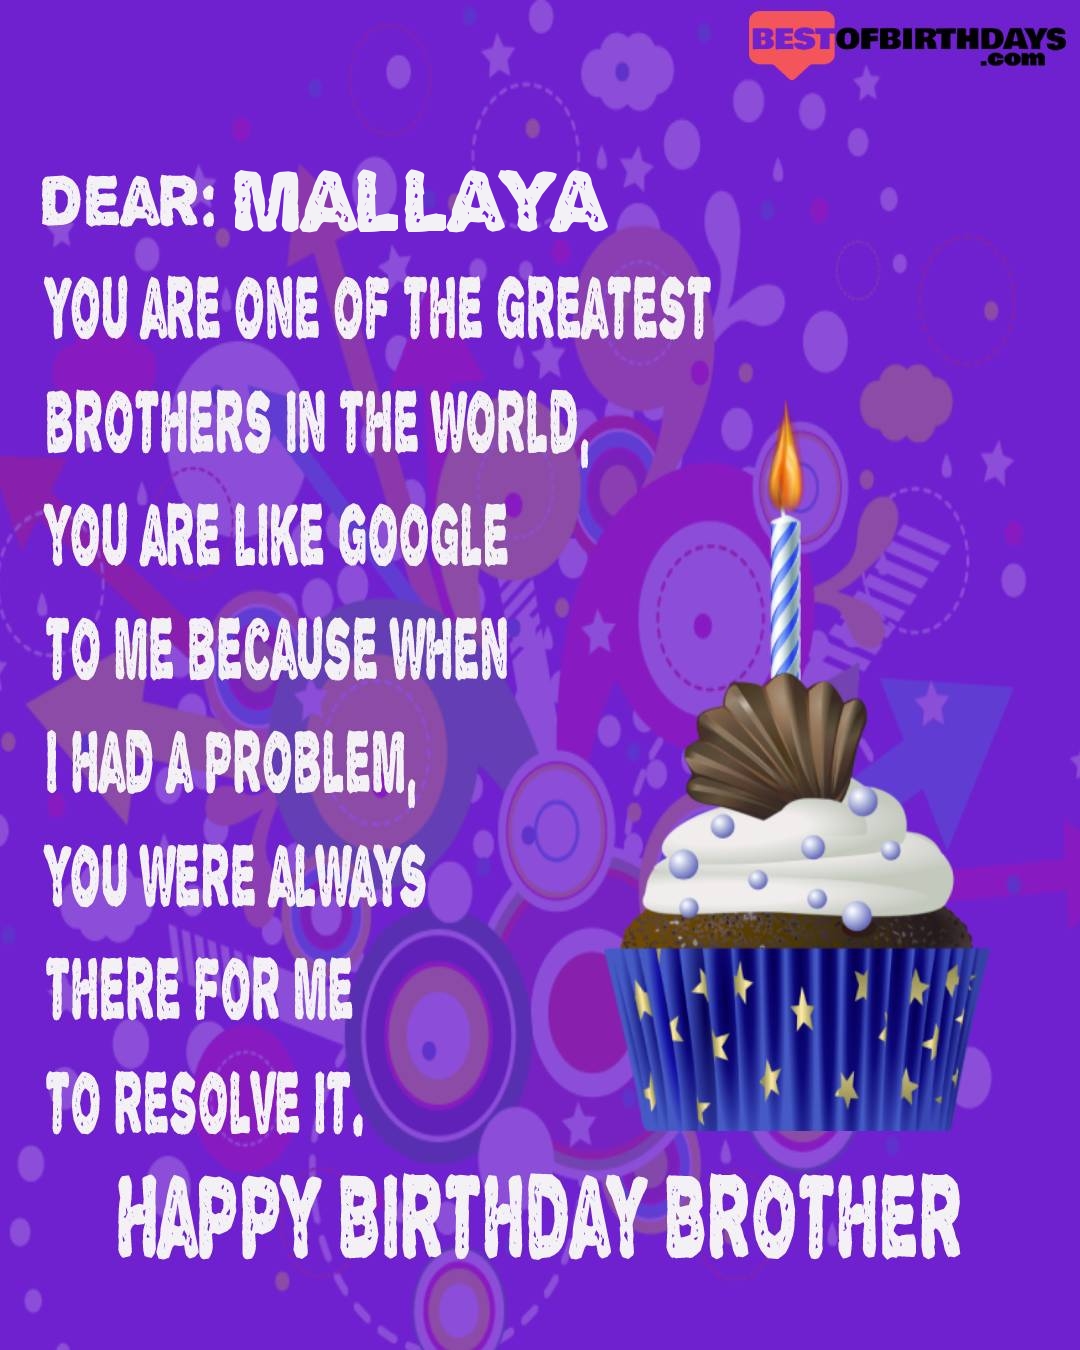 Happy birthday mallaya bhai brother bro